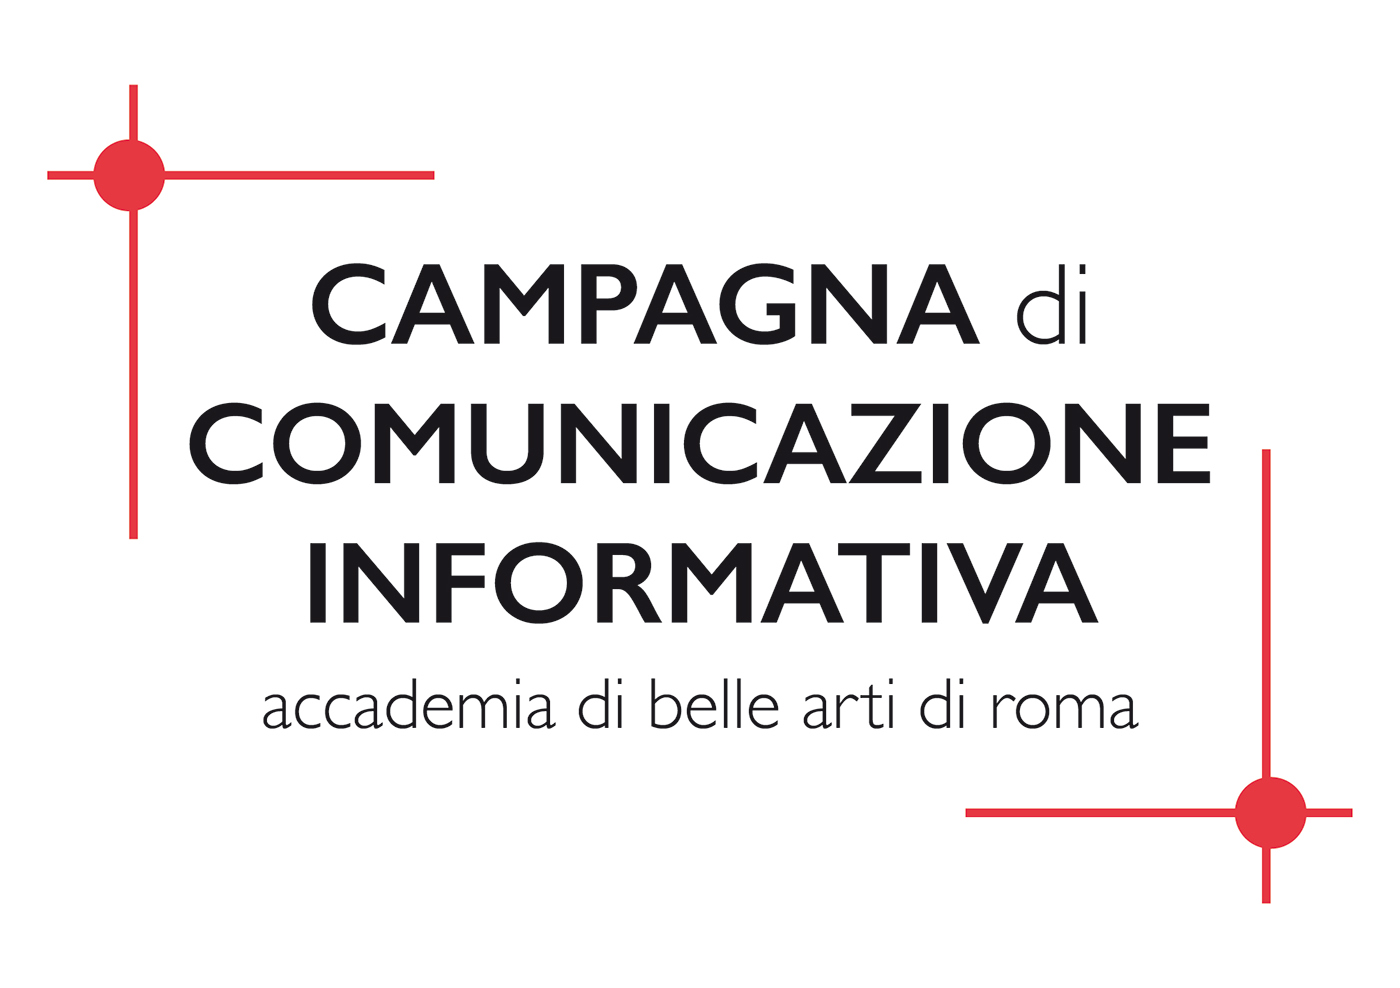 #grafica #fotografia #progettazione #illustrazione #comunicazione #informazione #font #mano # #accademia #roma